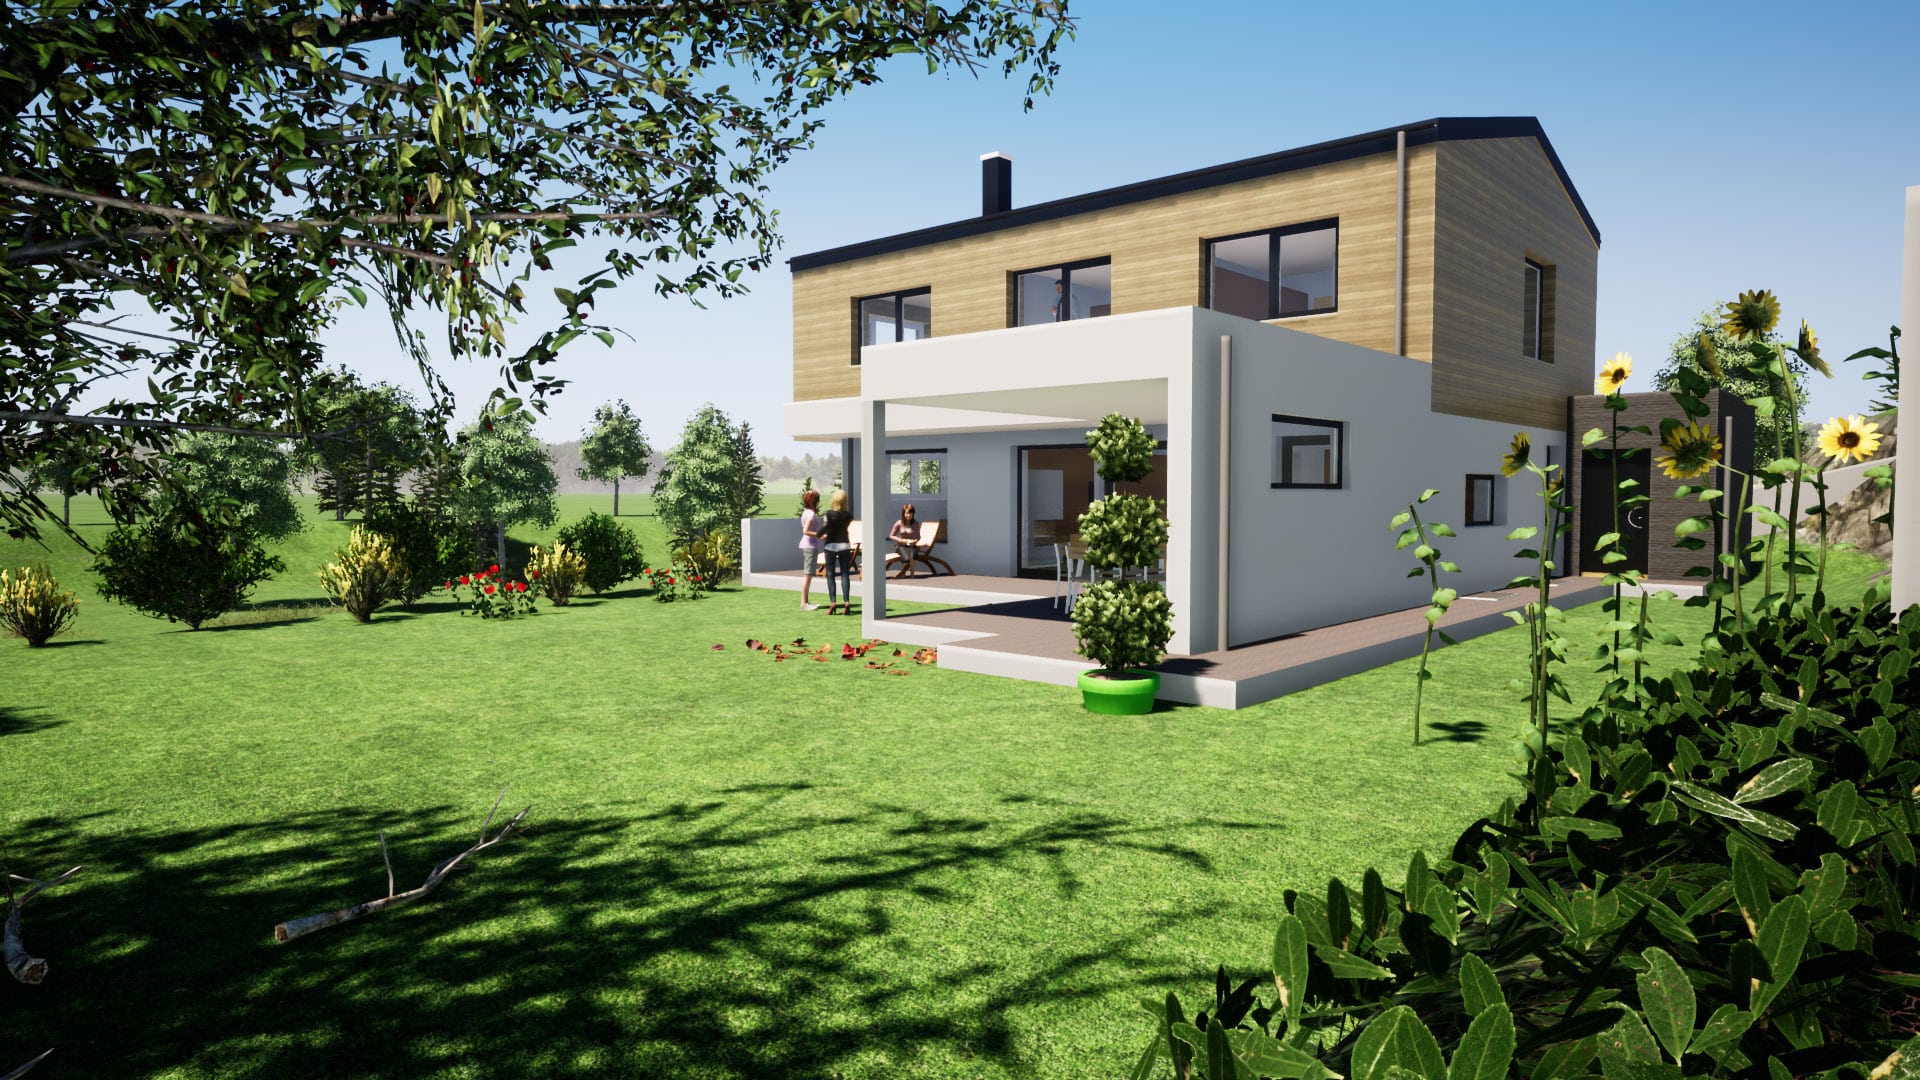 Bauplanung, Baubegleitung 3D-Visualisierung und Baukoordination via planco GmbH für ein modernes Einfamilienhaus mit Satteldach, Holzfassade im Obergeschoss, überdachter Terrasse und großem Garten.